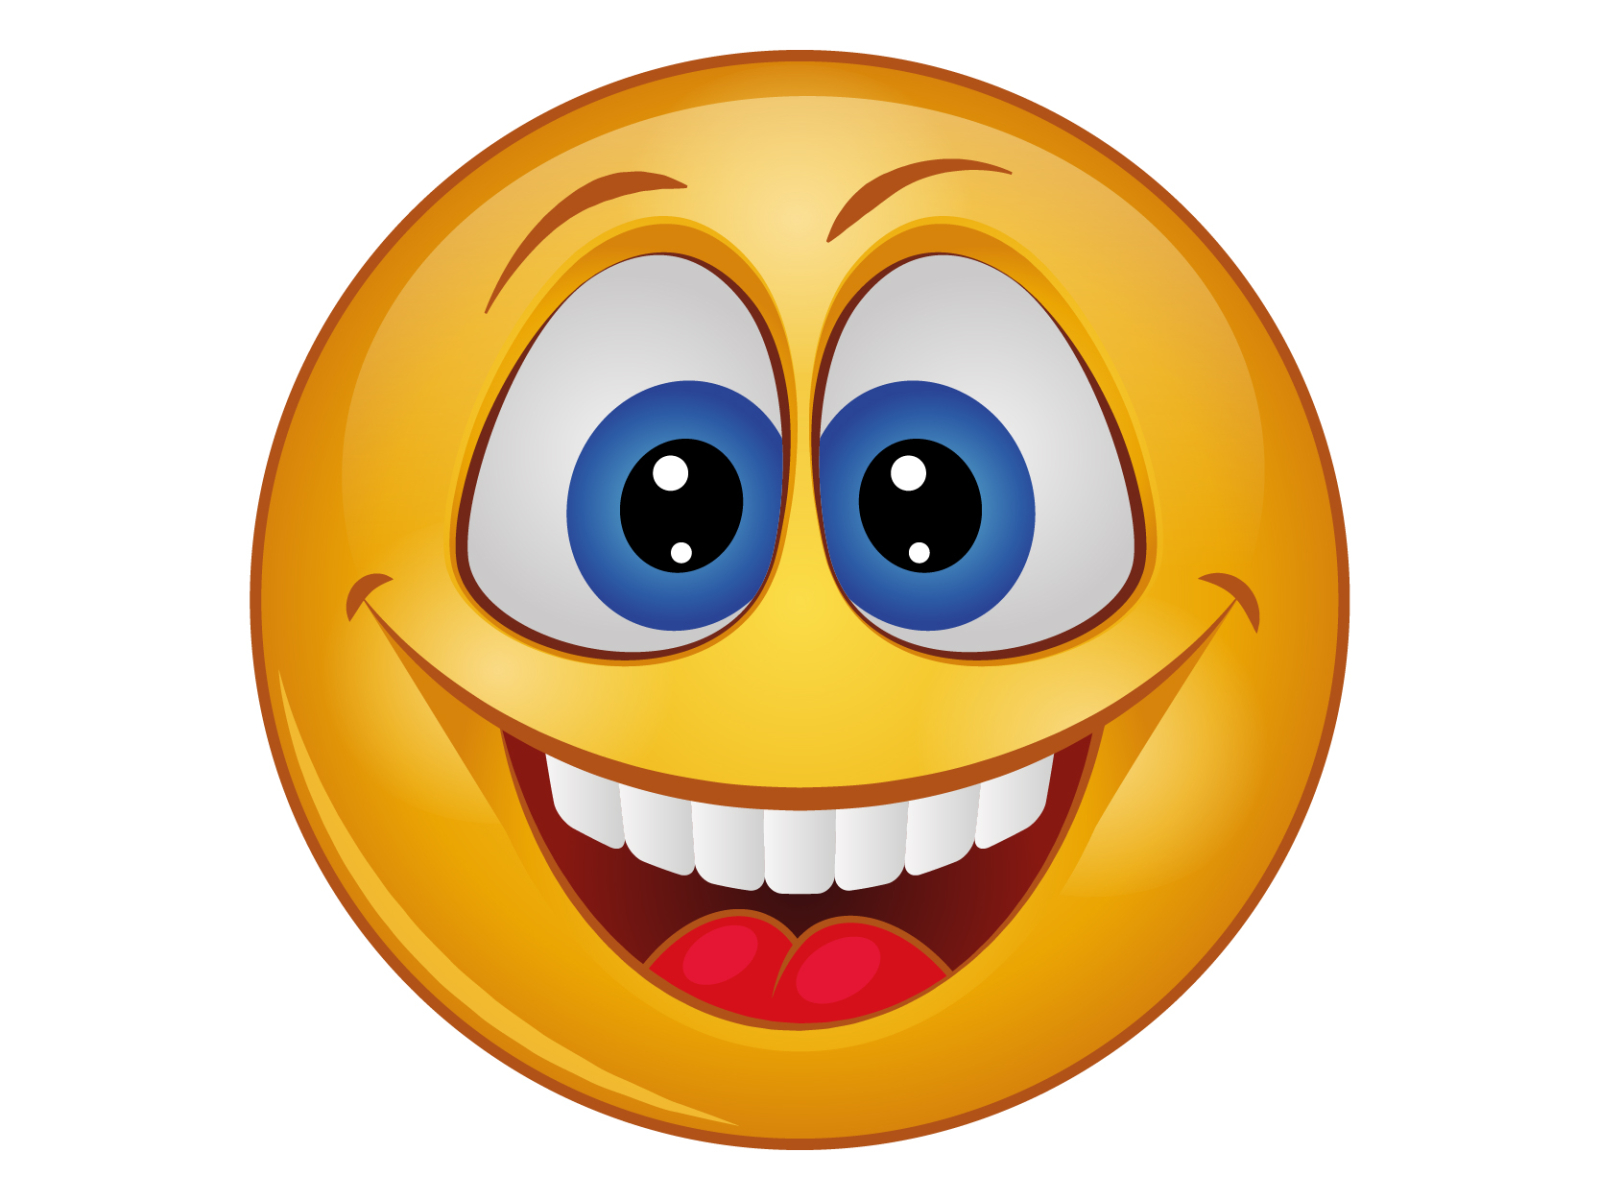 Very Happy Face Emoji